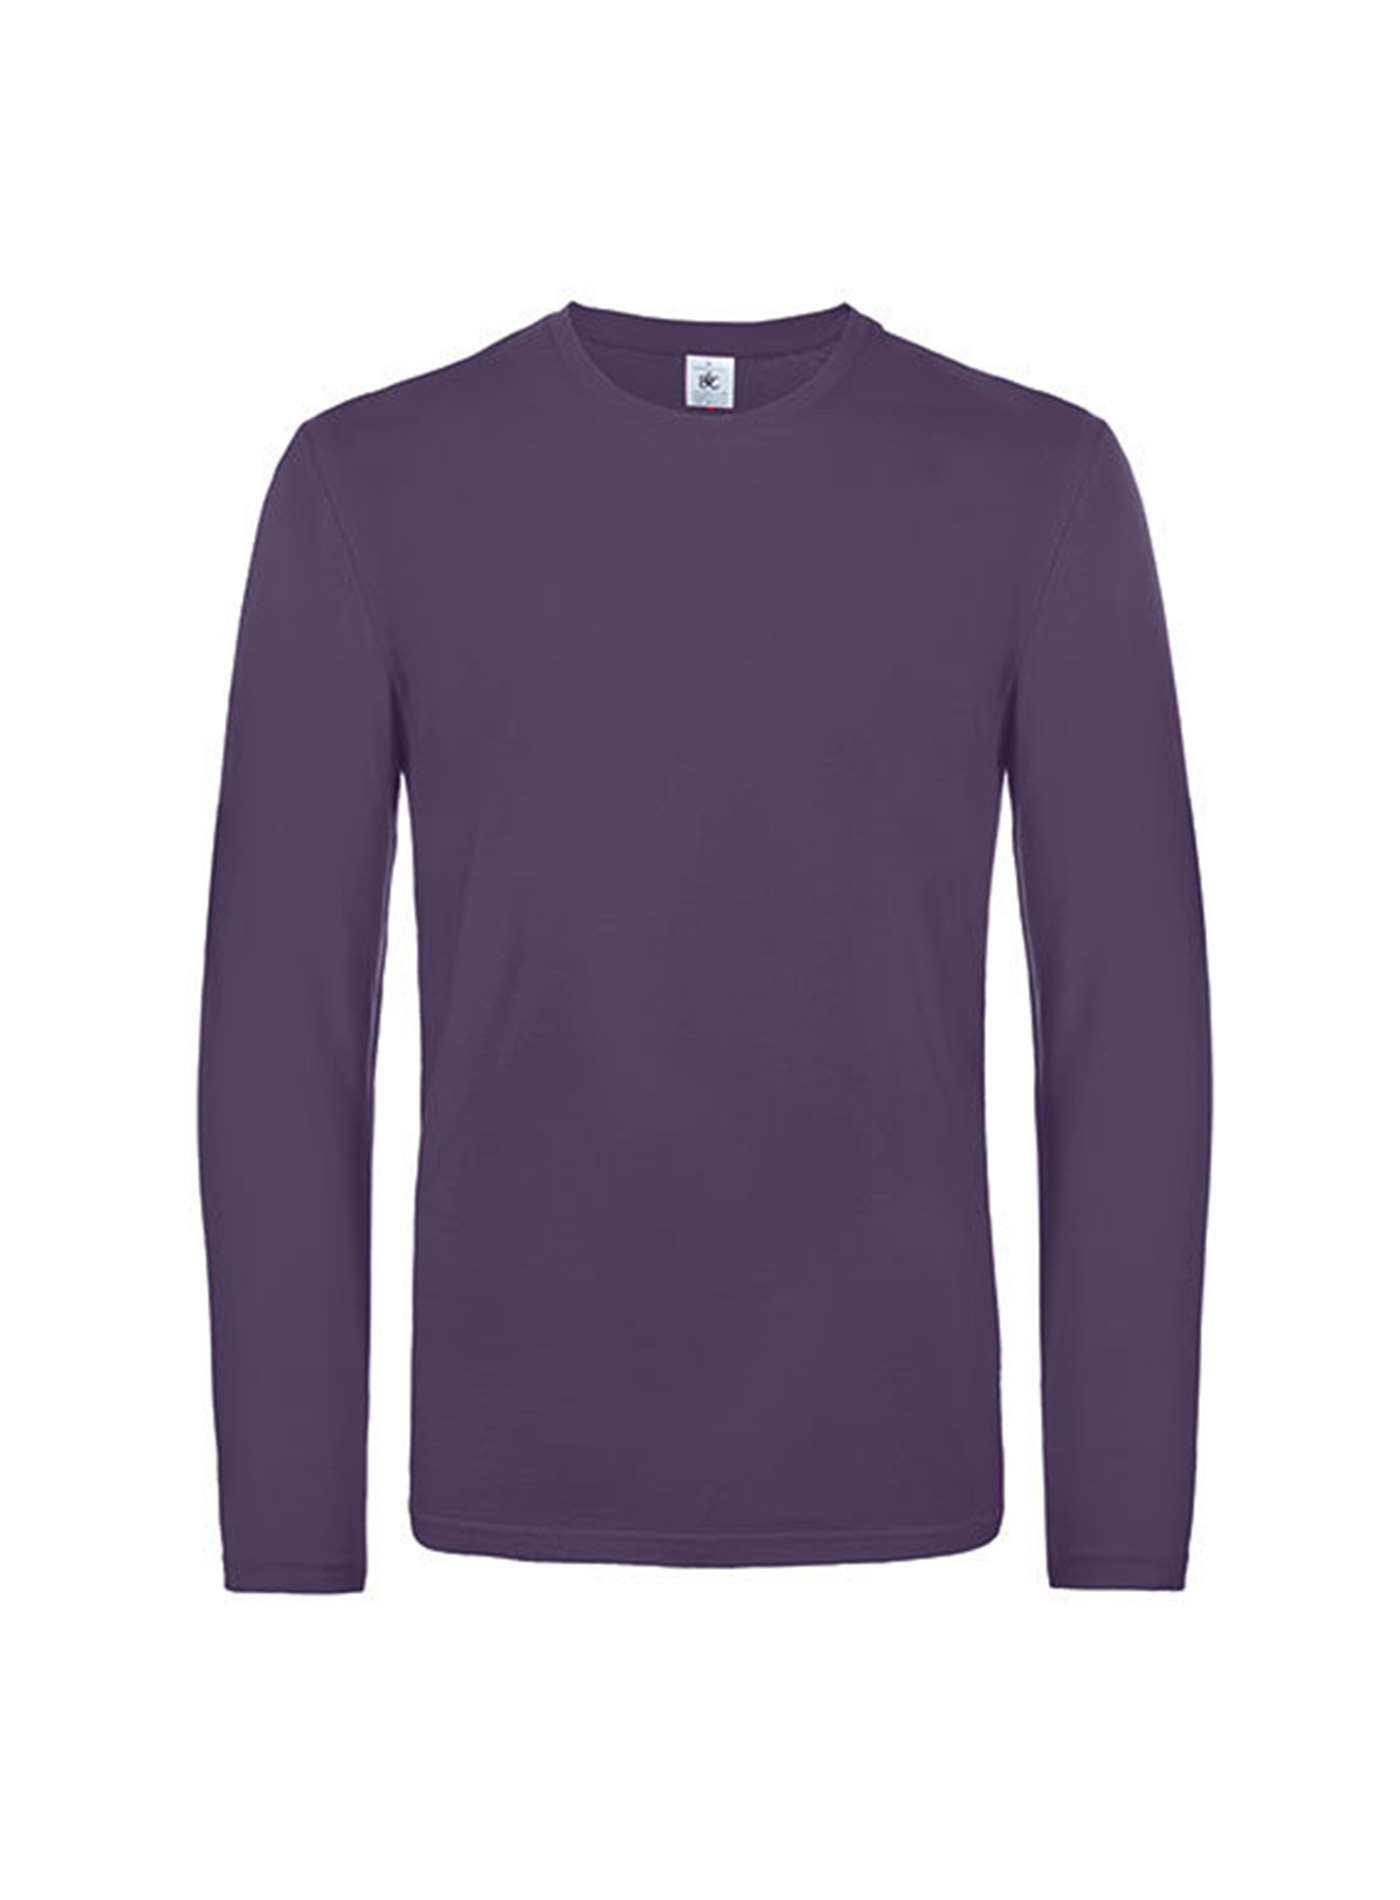 Pánské tričko s dlouhým rukávem B&C Collection - Tmavě fialová L